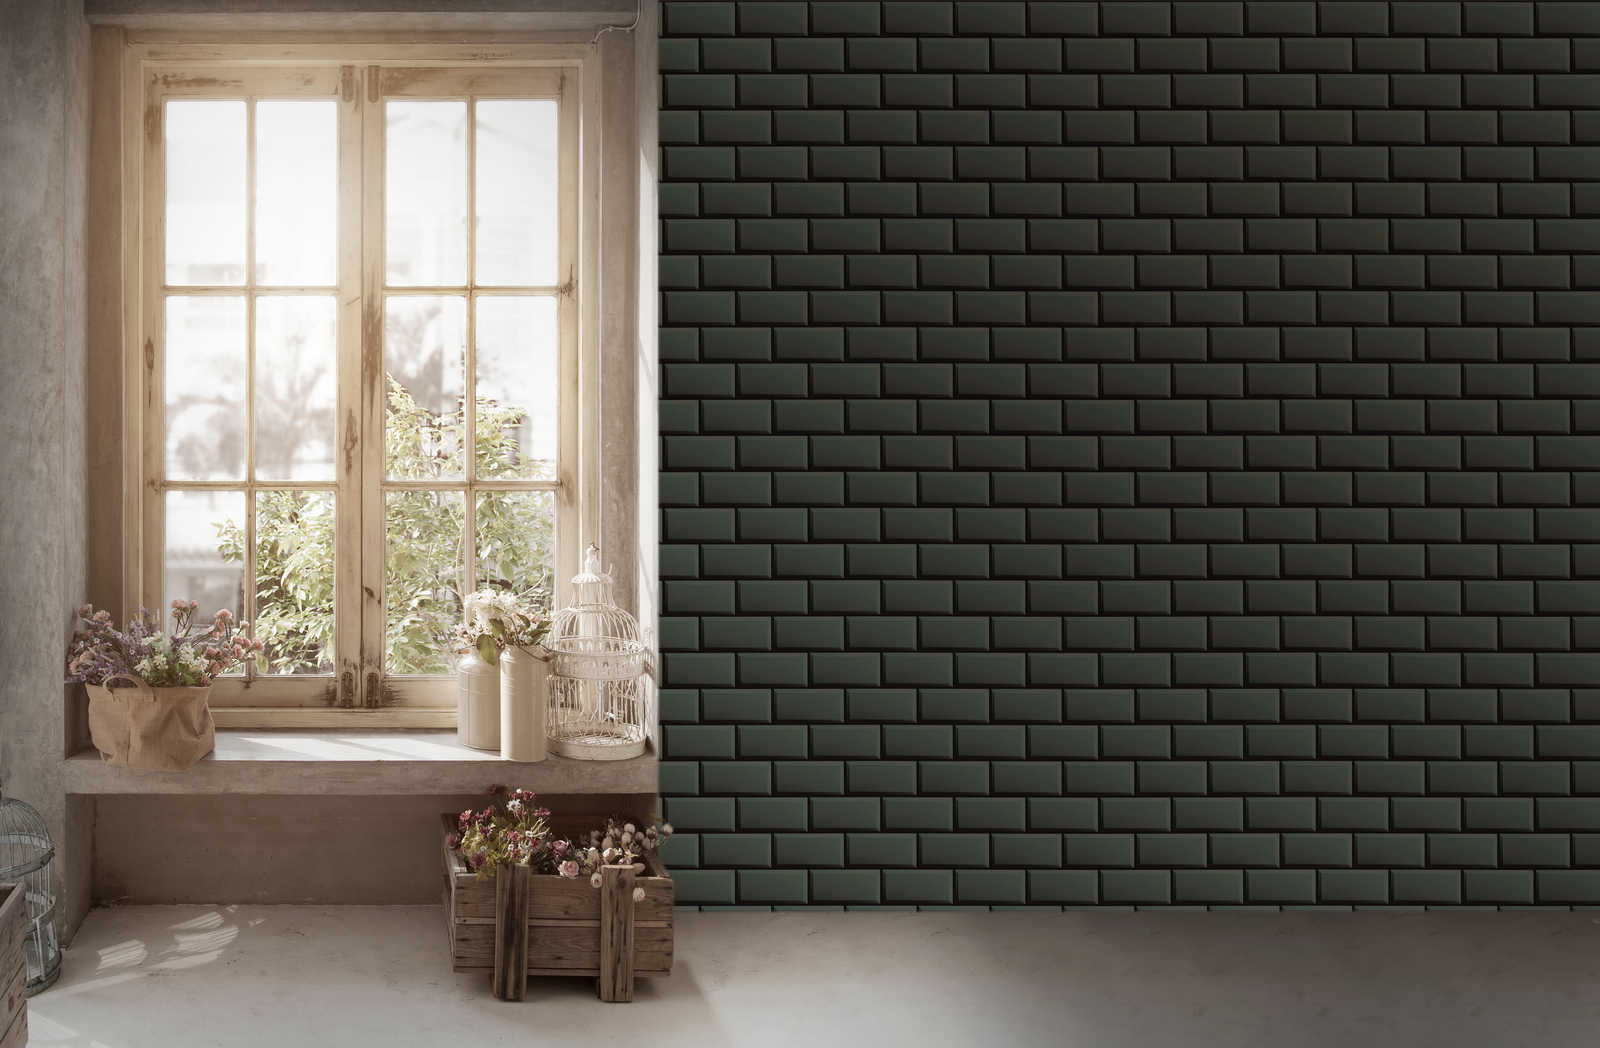             Non-woven wallpaper bathroom tiles in grey-black
        